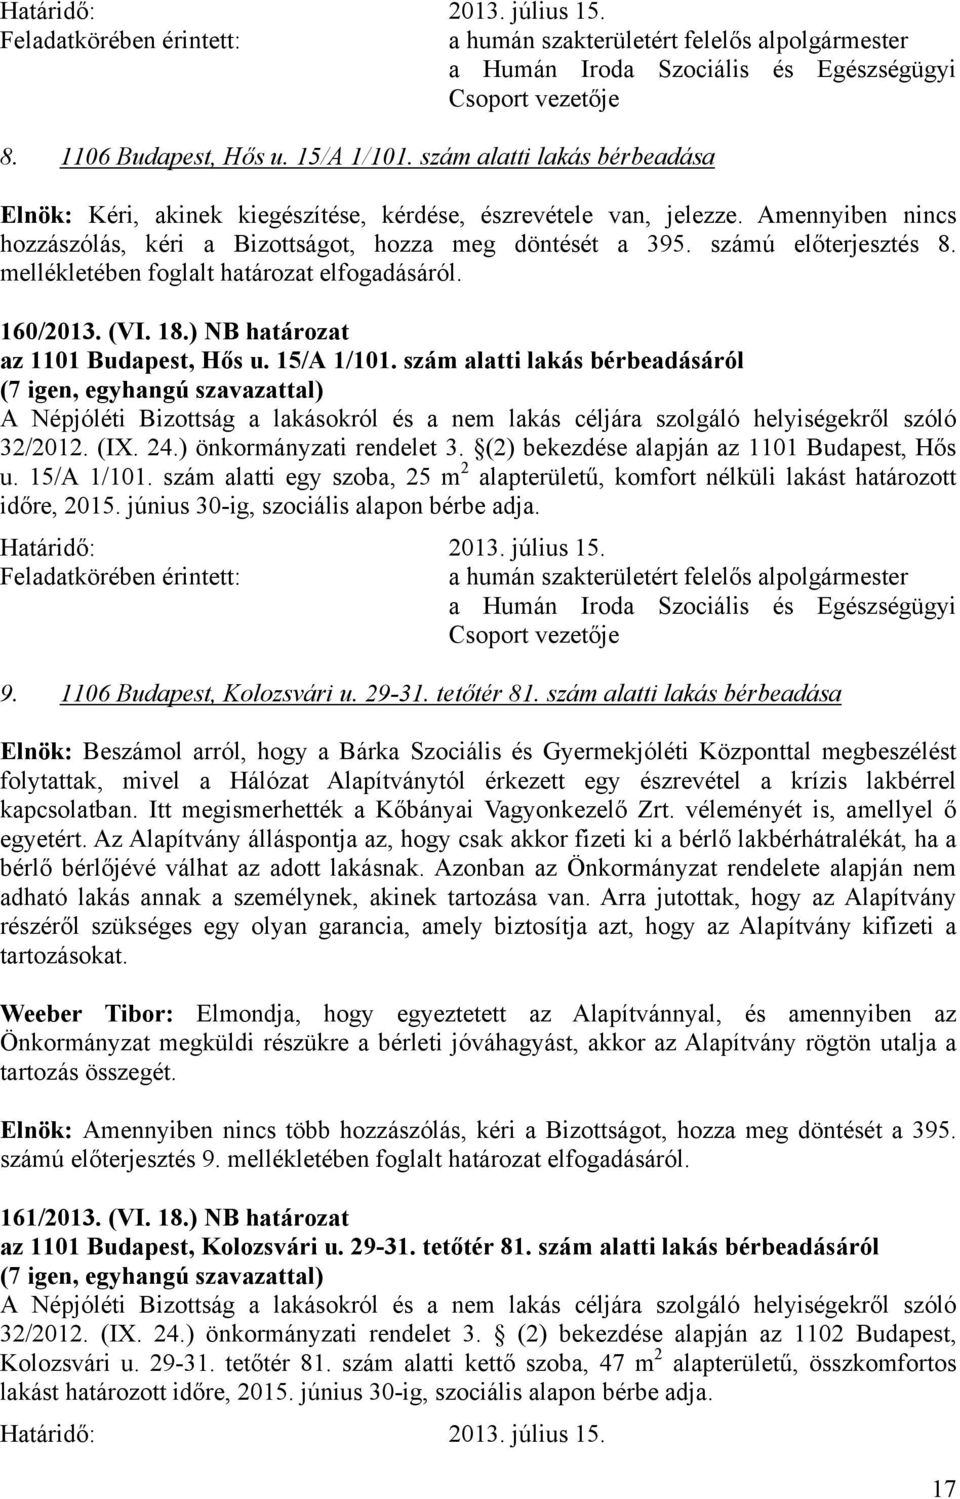 ) NB határozat az 1101 Budapest, Hős u. 15/A 1/101. szám alatti lakás bérbeadásáról A Népjóléti Bizottság a lakásokról és a nem lakás céljára szolgáló helyiségekről szóló 32/2012. (IX. 24.